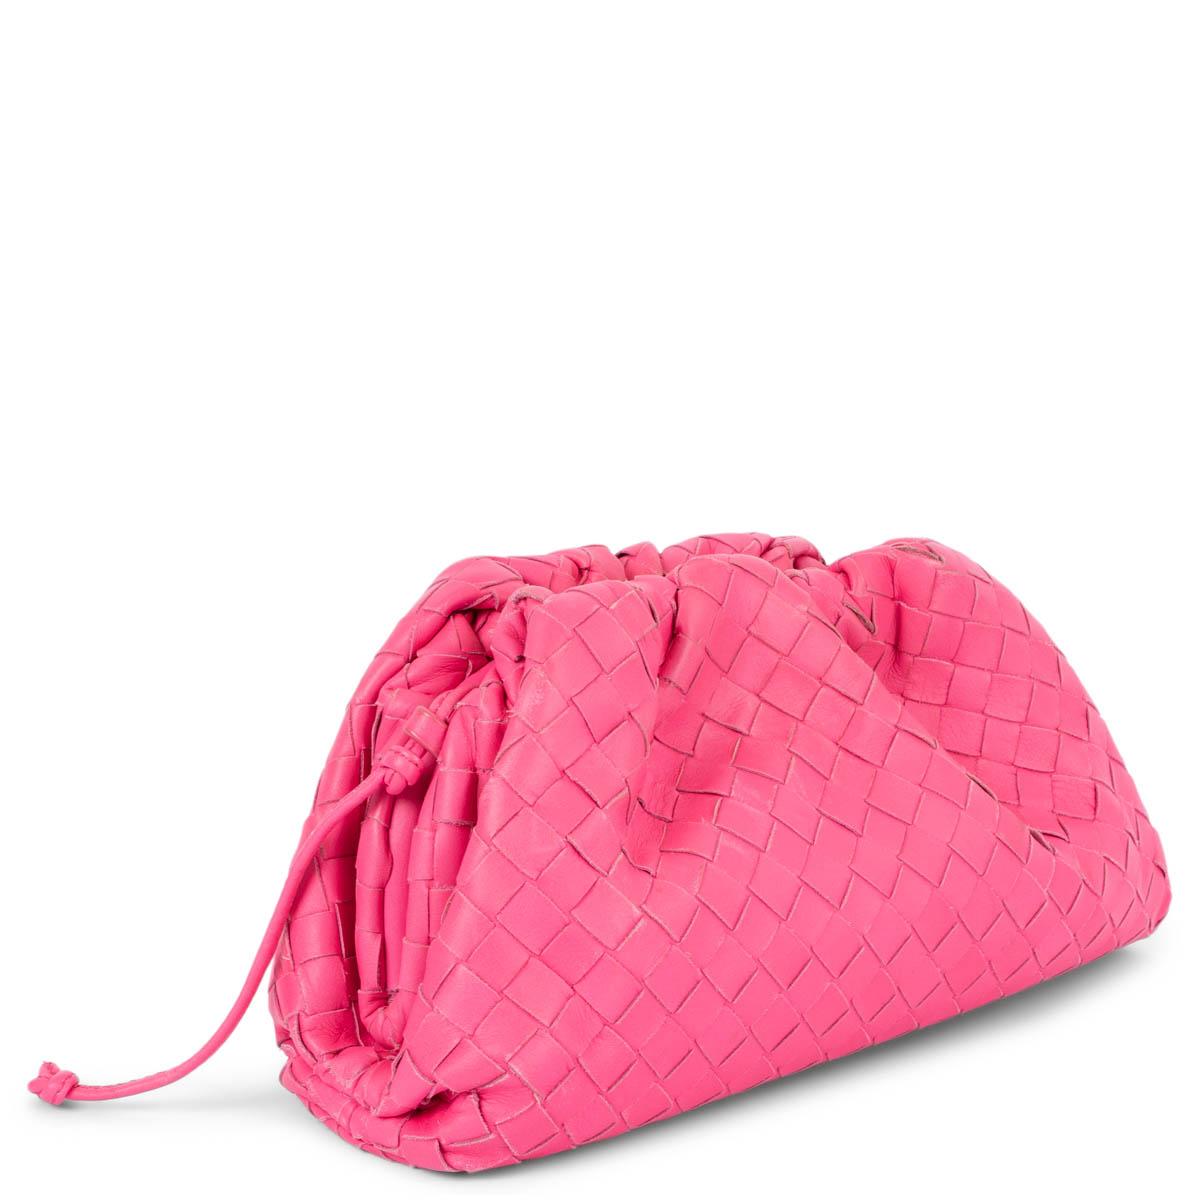 100% authentische Bottega Veneta Mini Pouch aus rosa Intrecciato Leder. Sie wird mit einem magnetischen Rahmenverschluss geöffnet und hat ein einzelnes, mit Kalbsleder ausgekleidetes Fach, das getragen wurde und leichte Abnutzungserscheinungen an